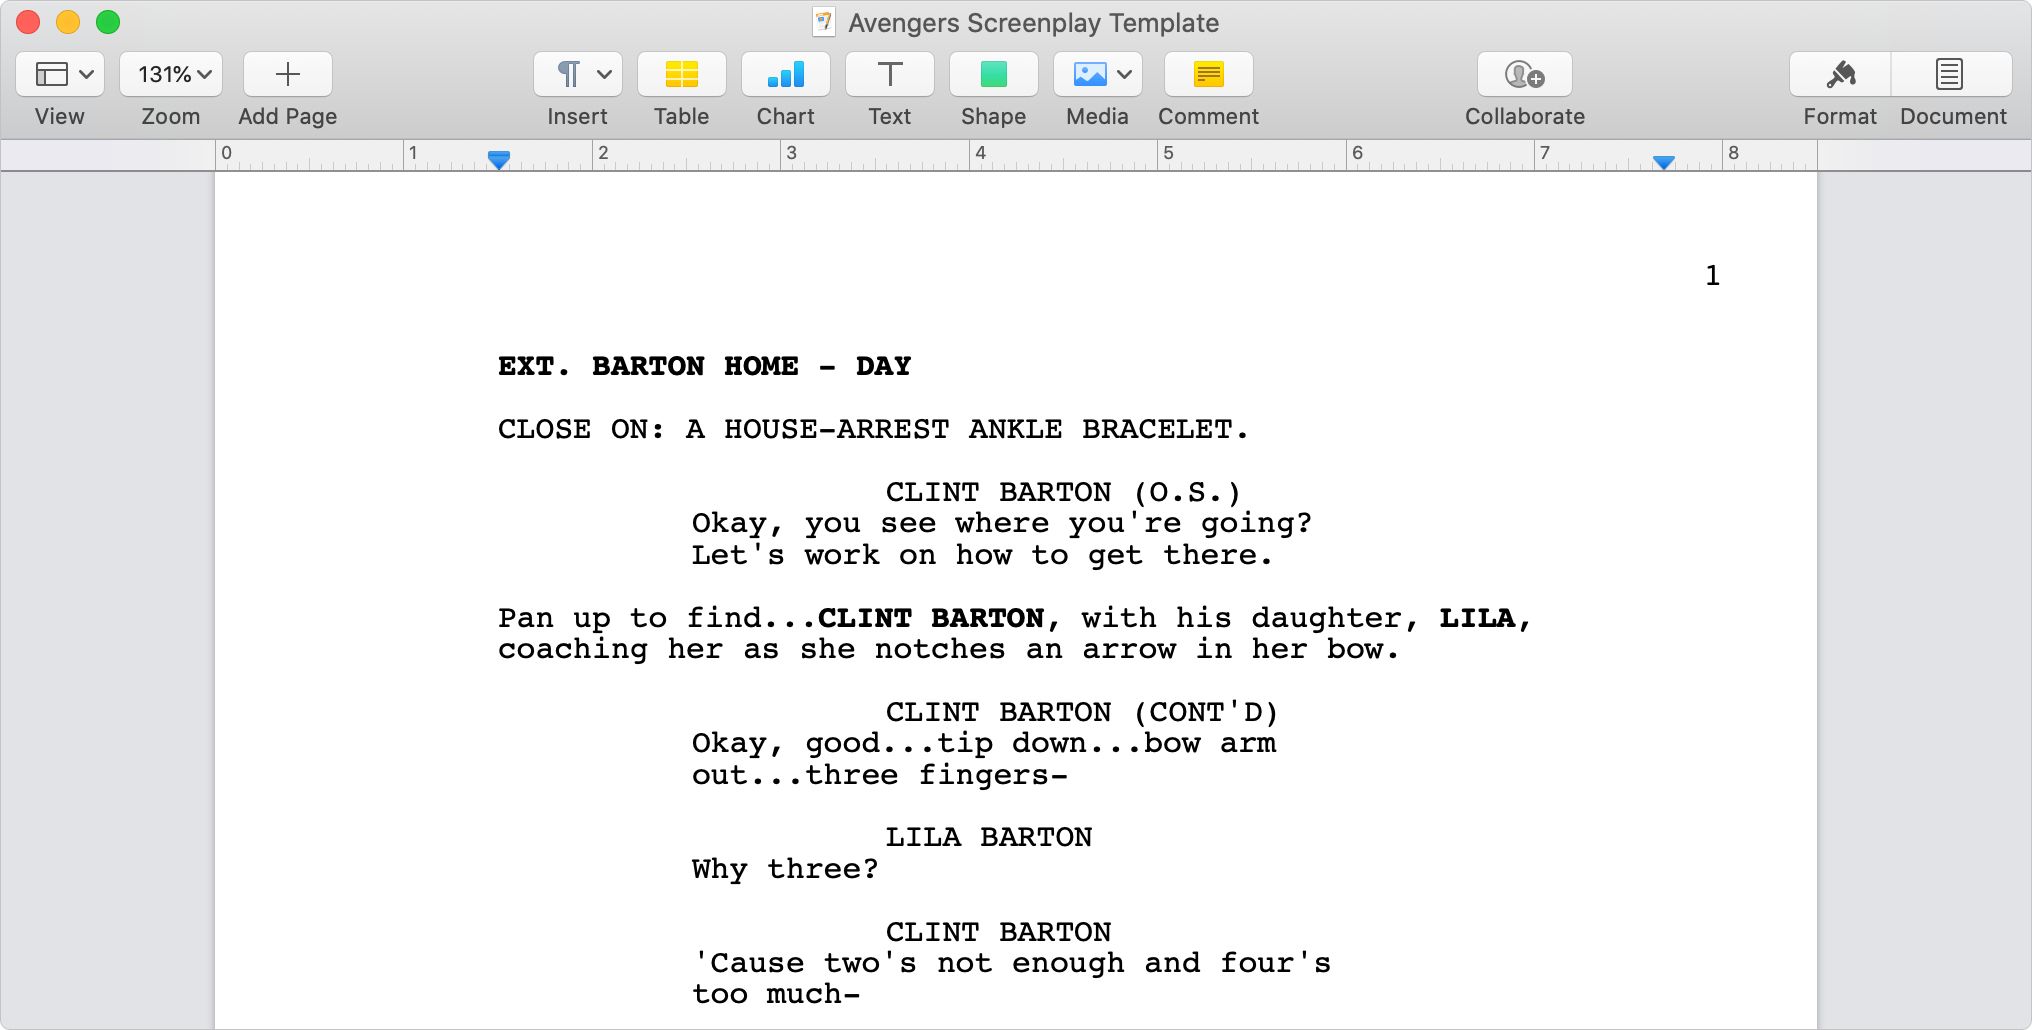 Avengers Endgame screenplay template in Apple Pages - Come formattare una sceneggiatura